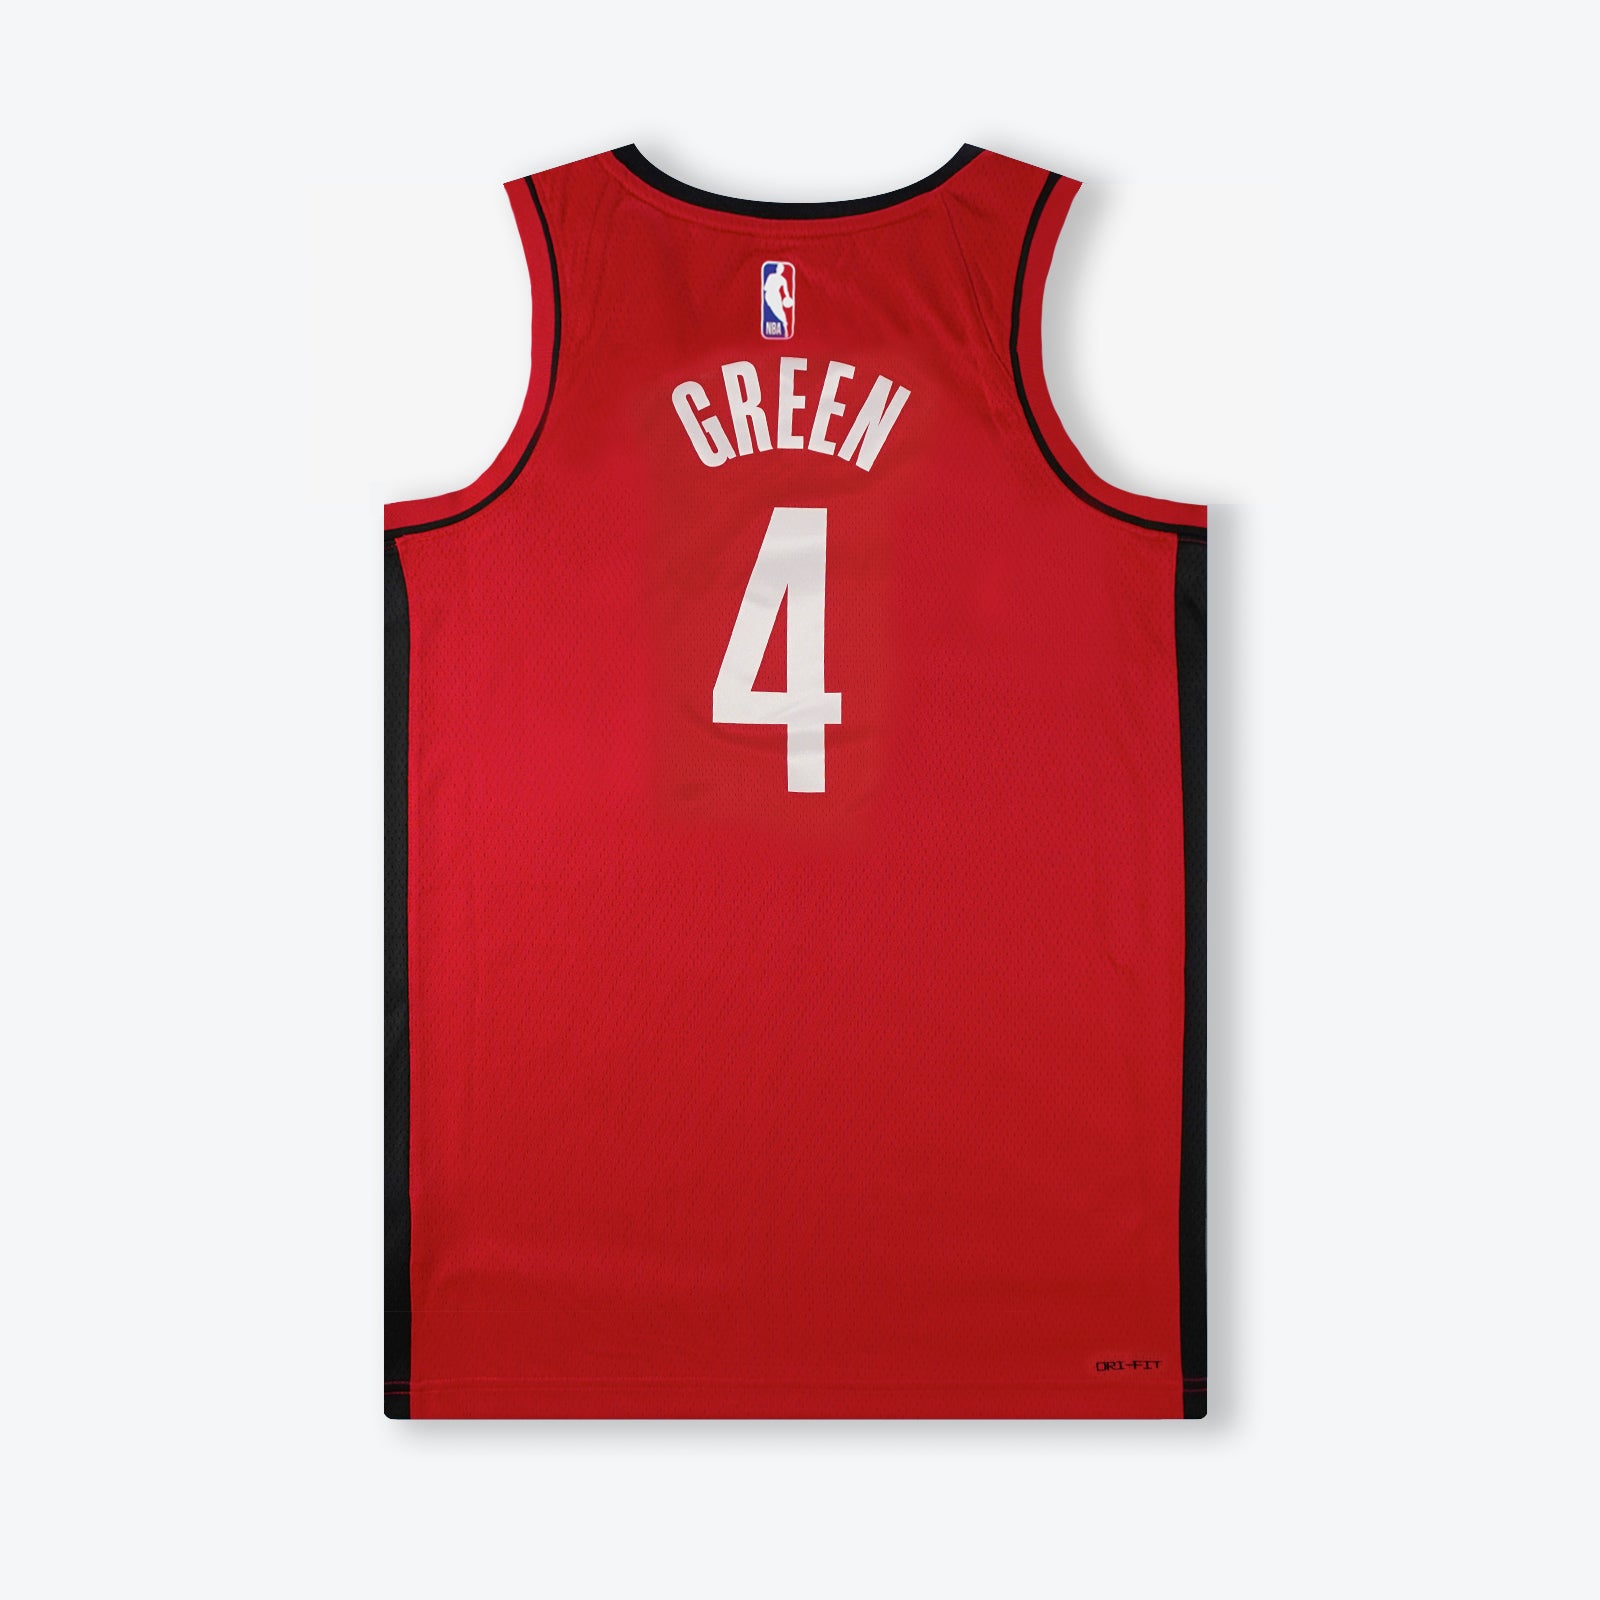 Men's Houston Rockets Jordan Brand Jalen Green Statement Edition Swingman  Jersey